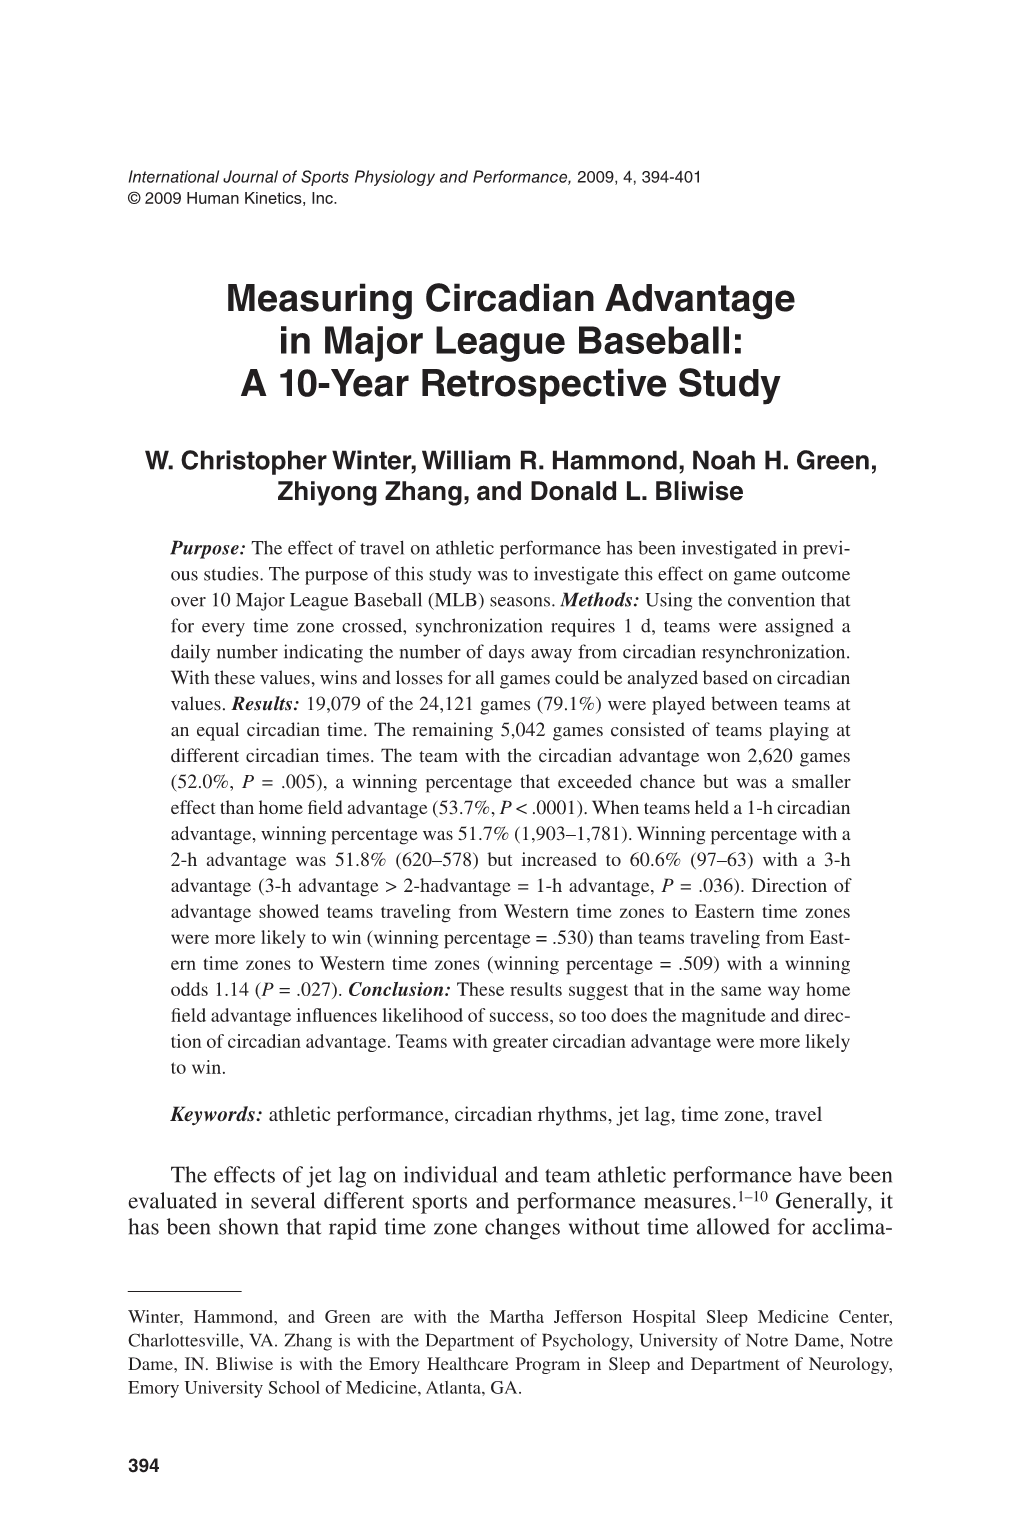 Measuring Circadian Advantage in Major League Baseball: a 10-Year Retrospective Study